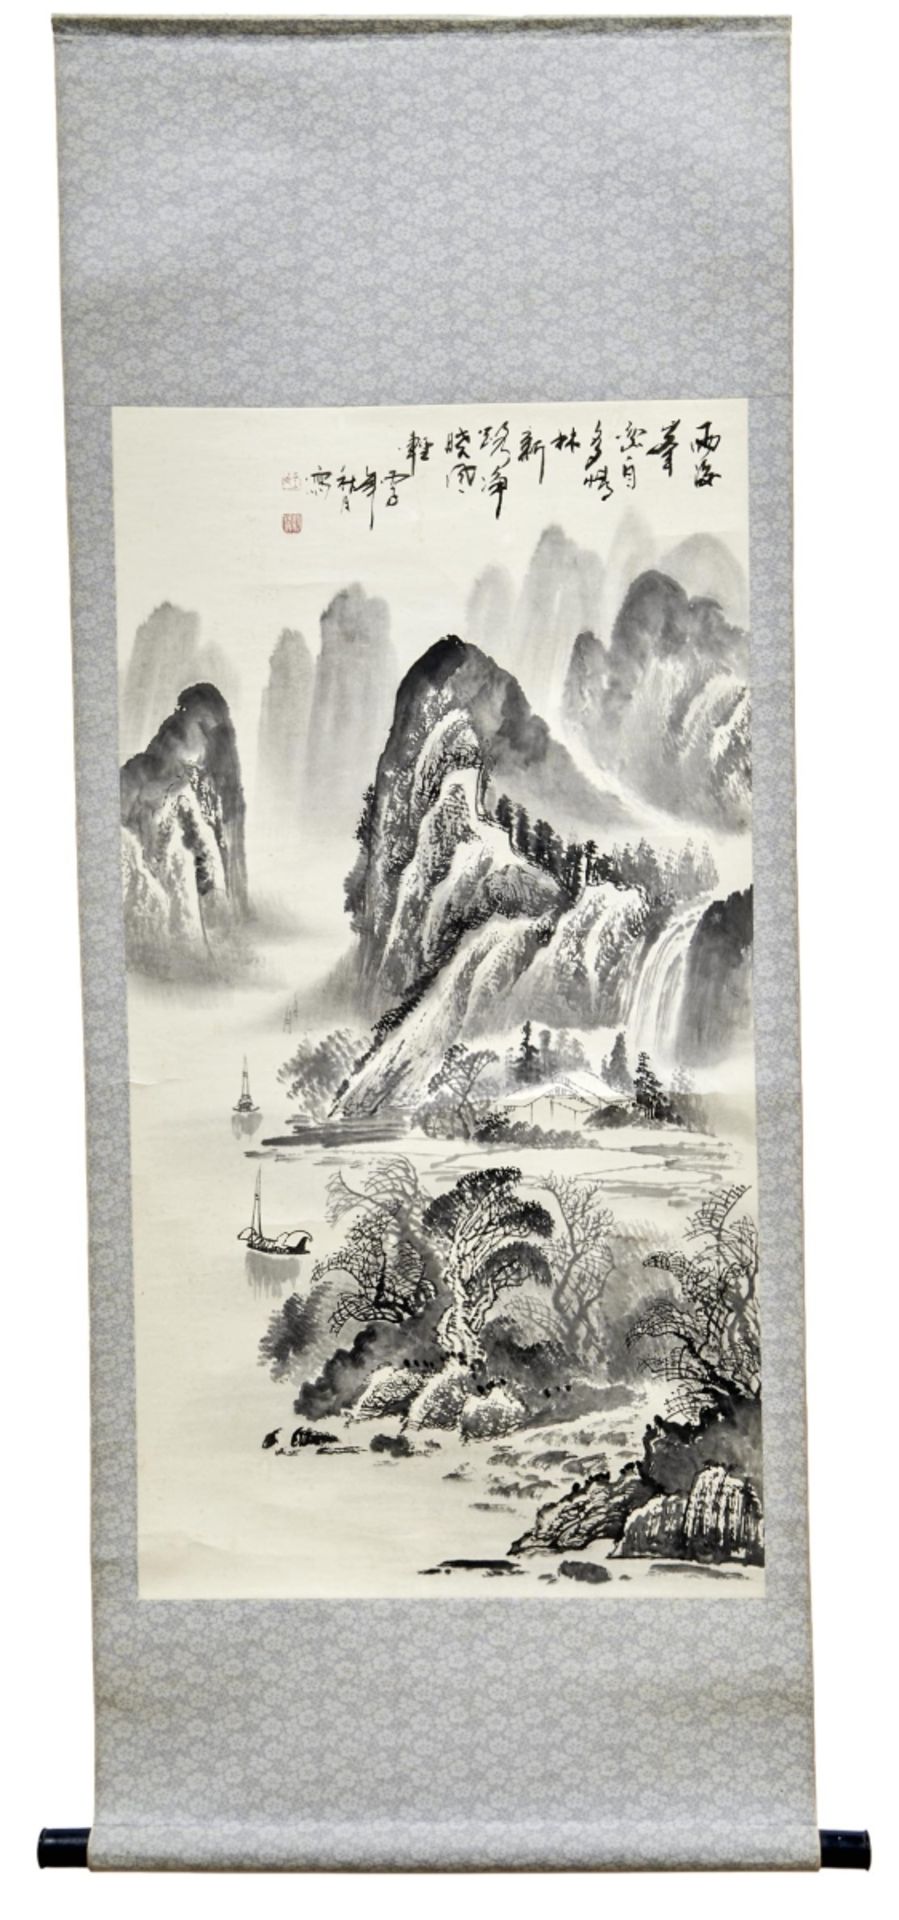 Hängerolle mit Shan-Shui-Landschaft, China